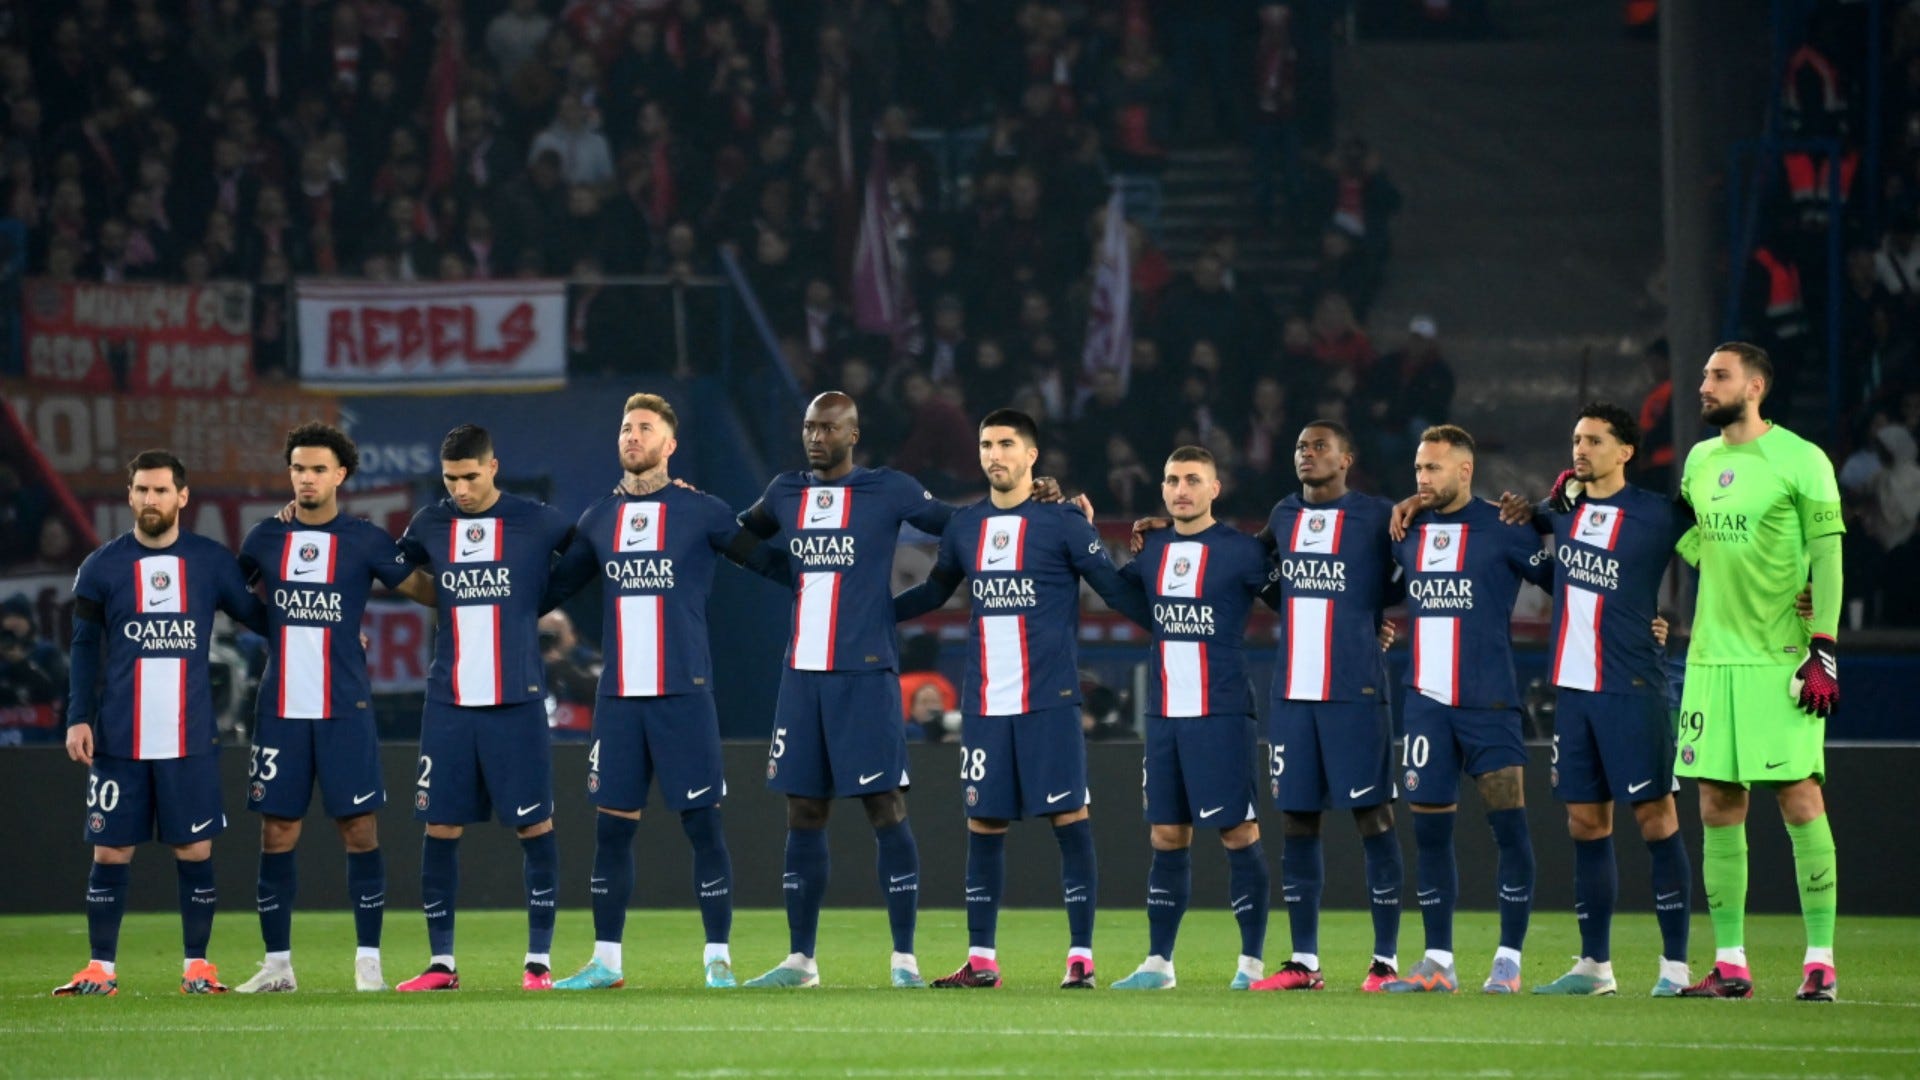 Défaite face au Bayern : L’identité de la star du PSG qui a haussé le ton dans le vestiaire révélée